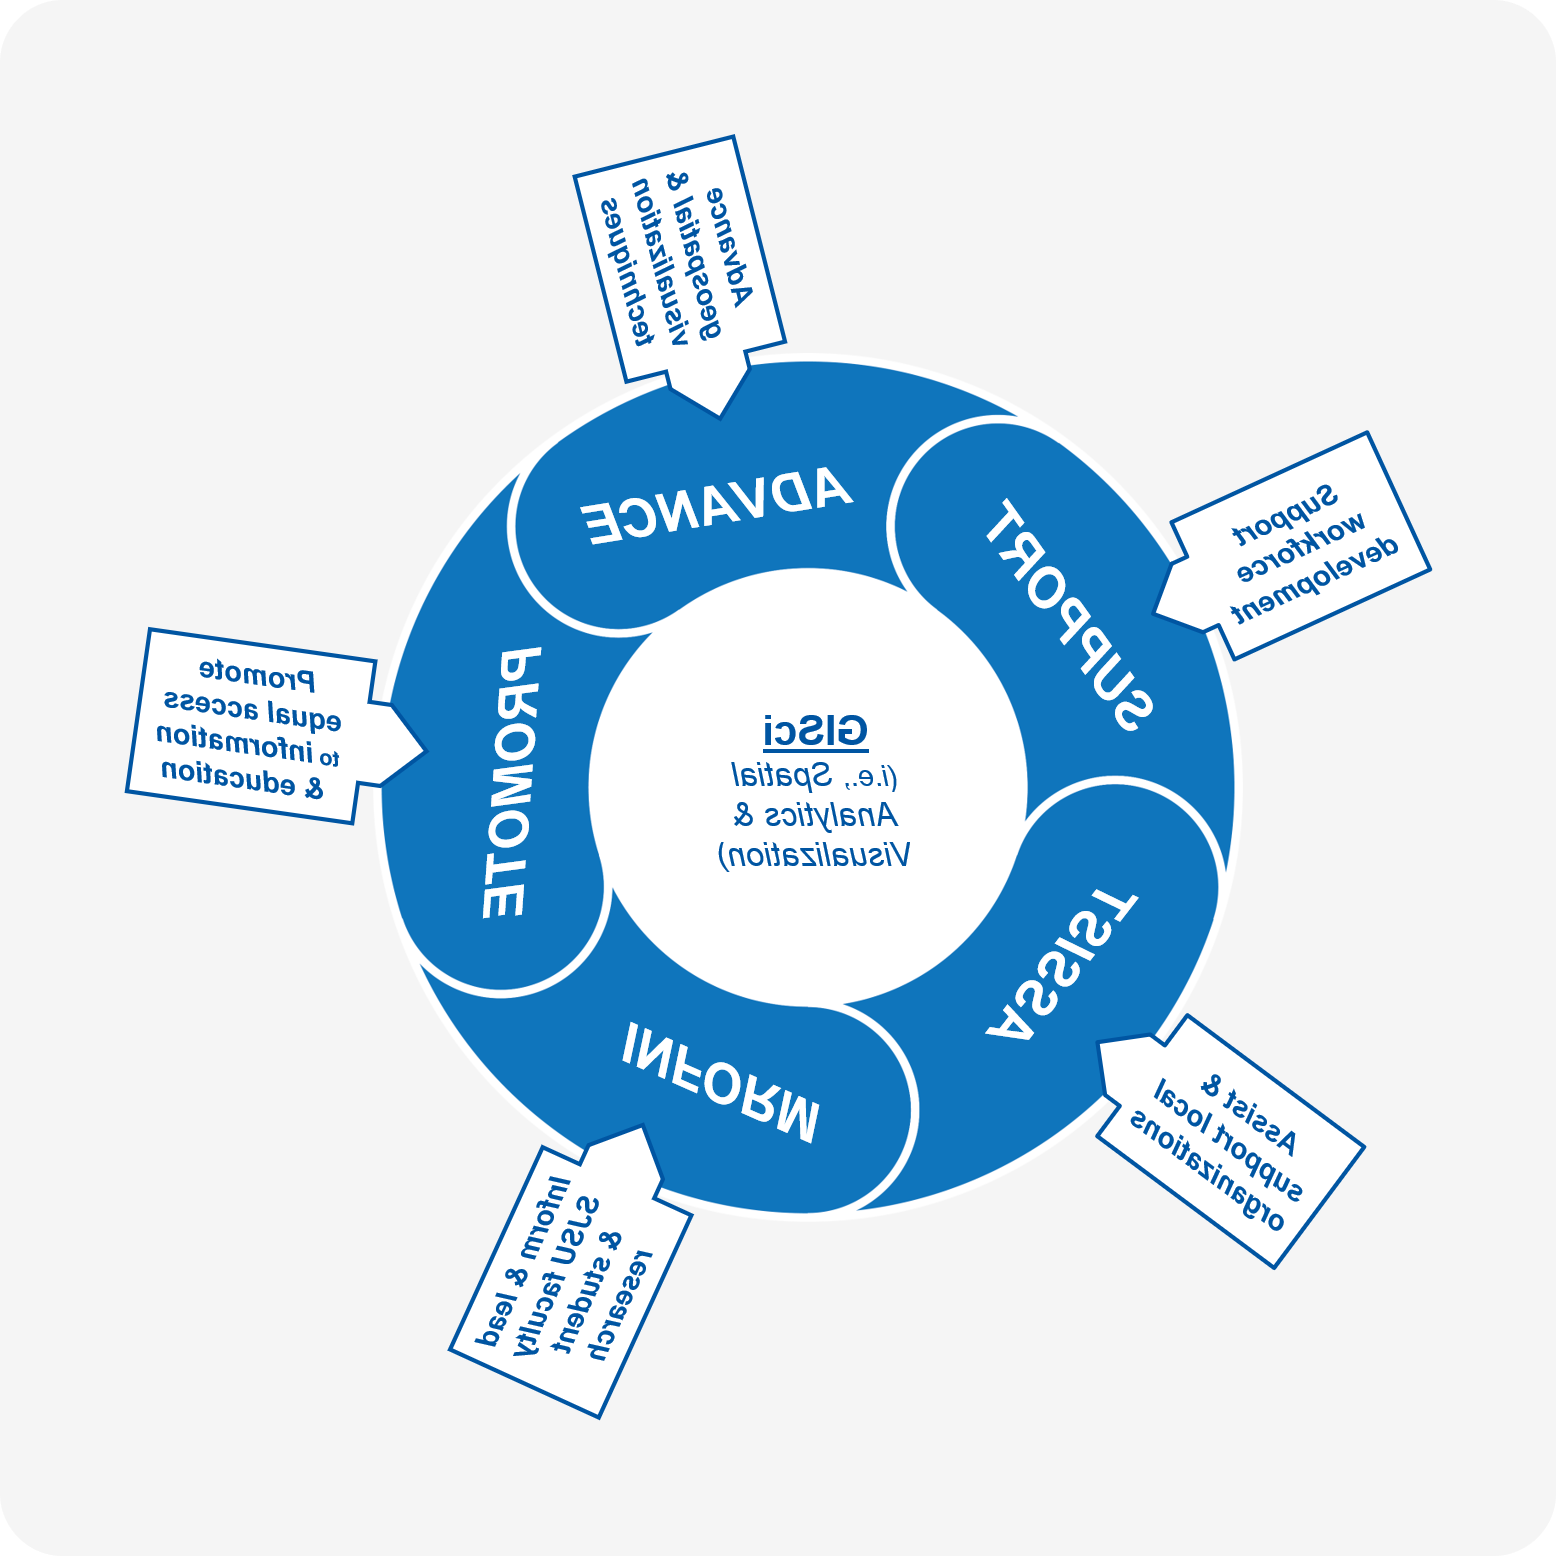 图表显示支持、推进、促进、通知和协助是SAVi的关键要素